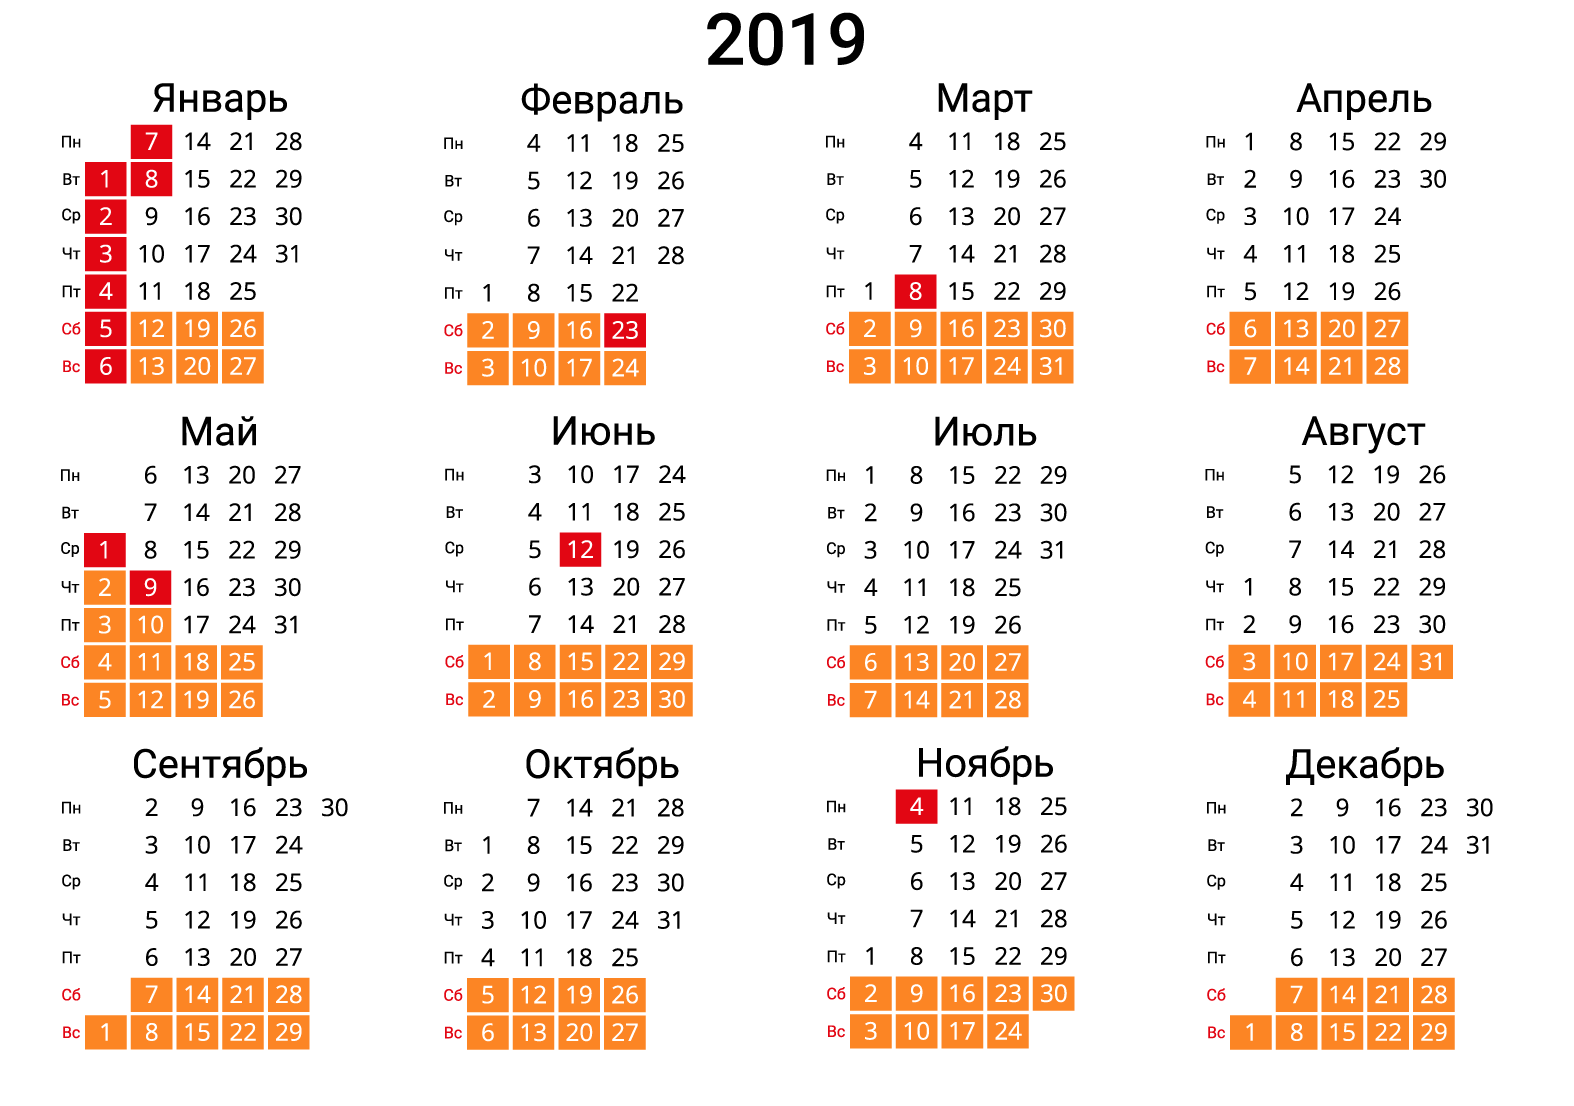 Праздники 2019 производственный календарь. Календарь праздников. Календарь 2019 года с праздниками. Календарь на 2019 год с праздниками и выходными. Напечатать календарь.